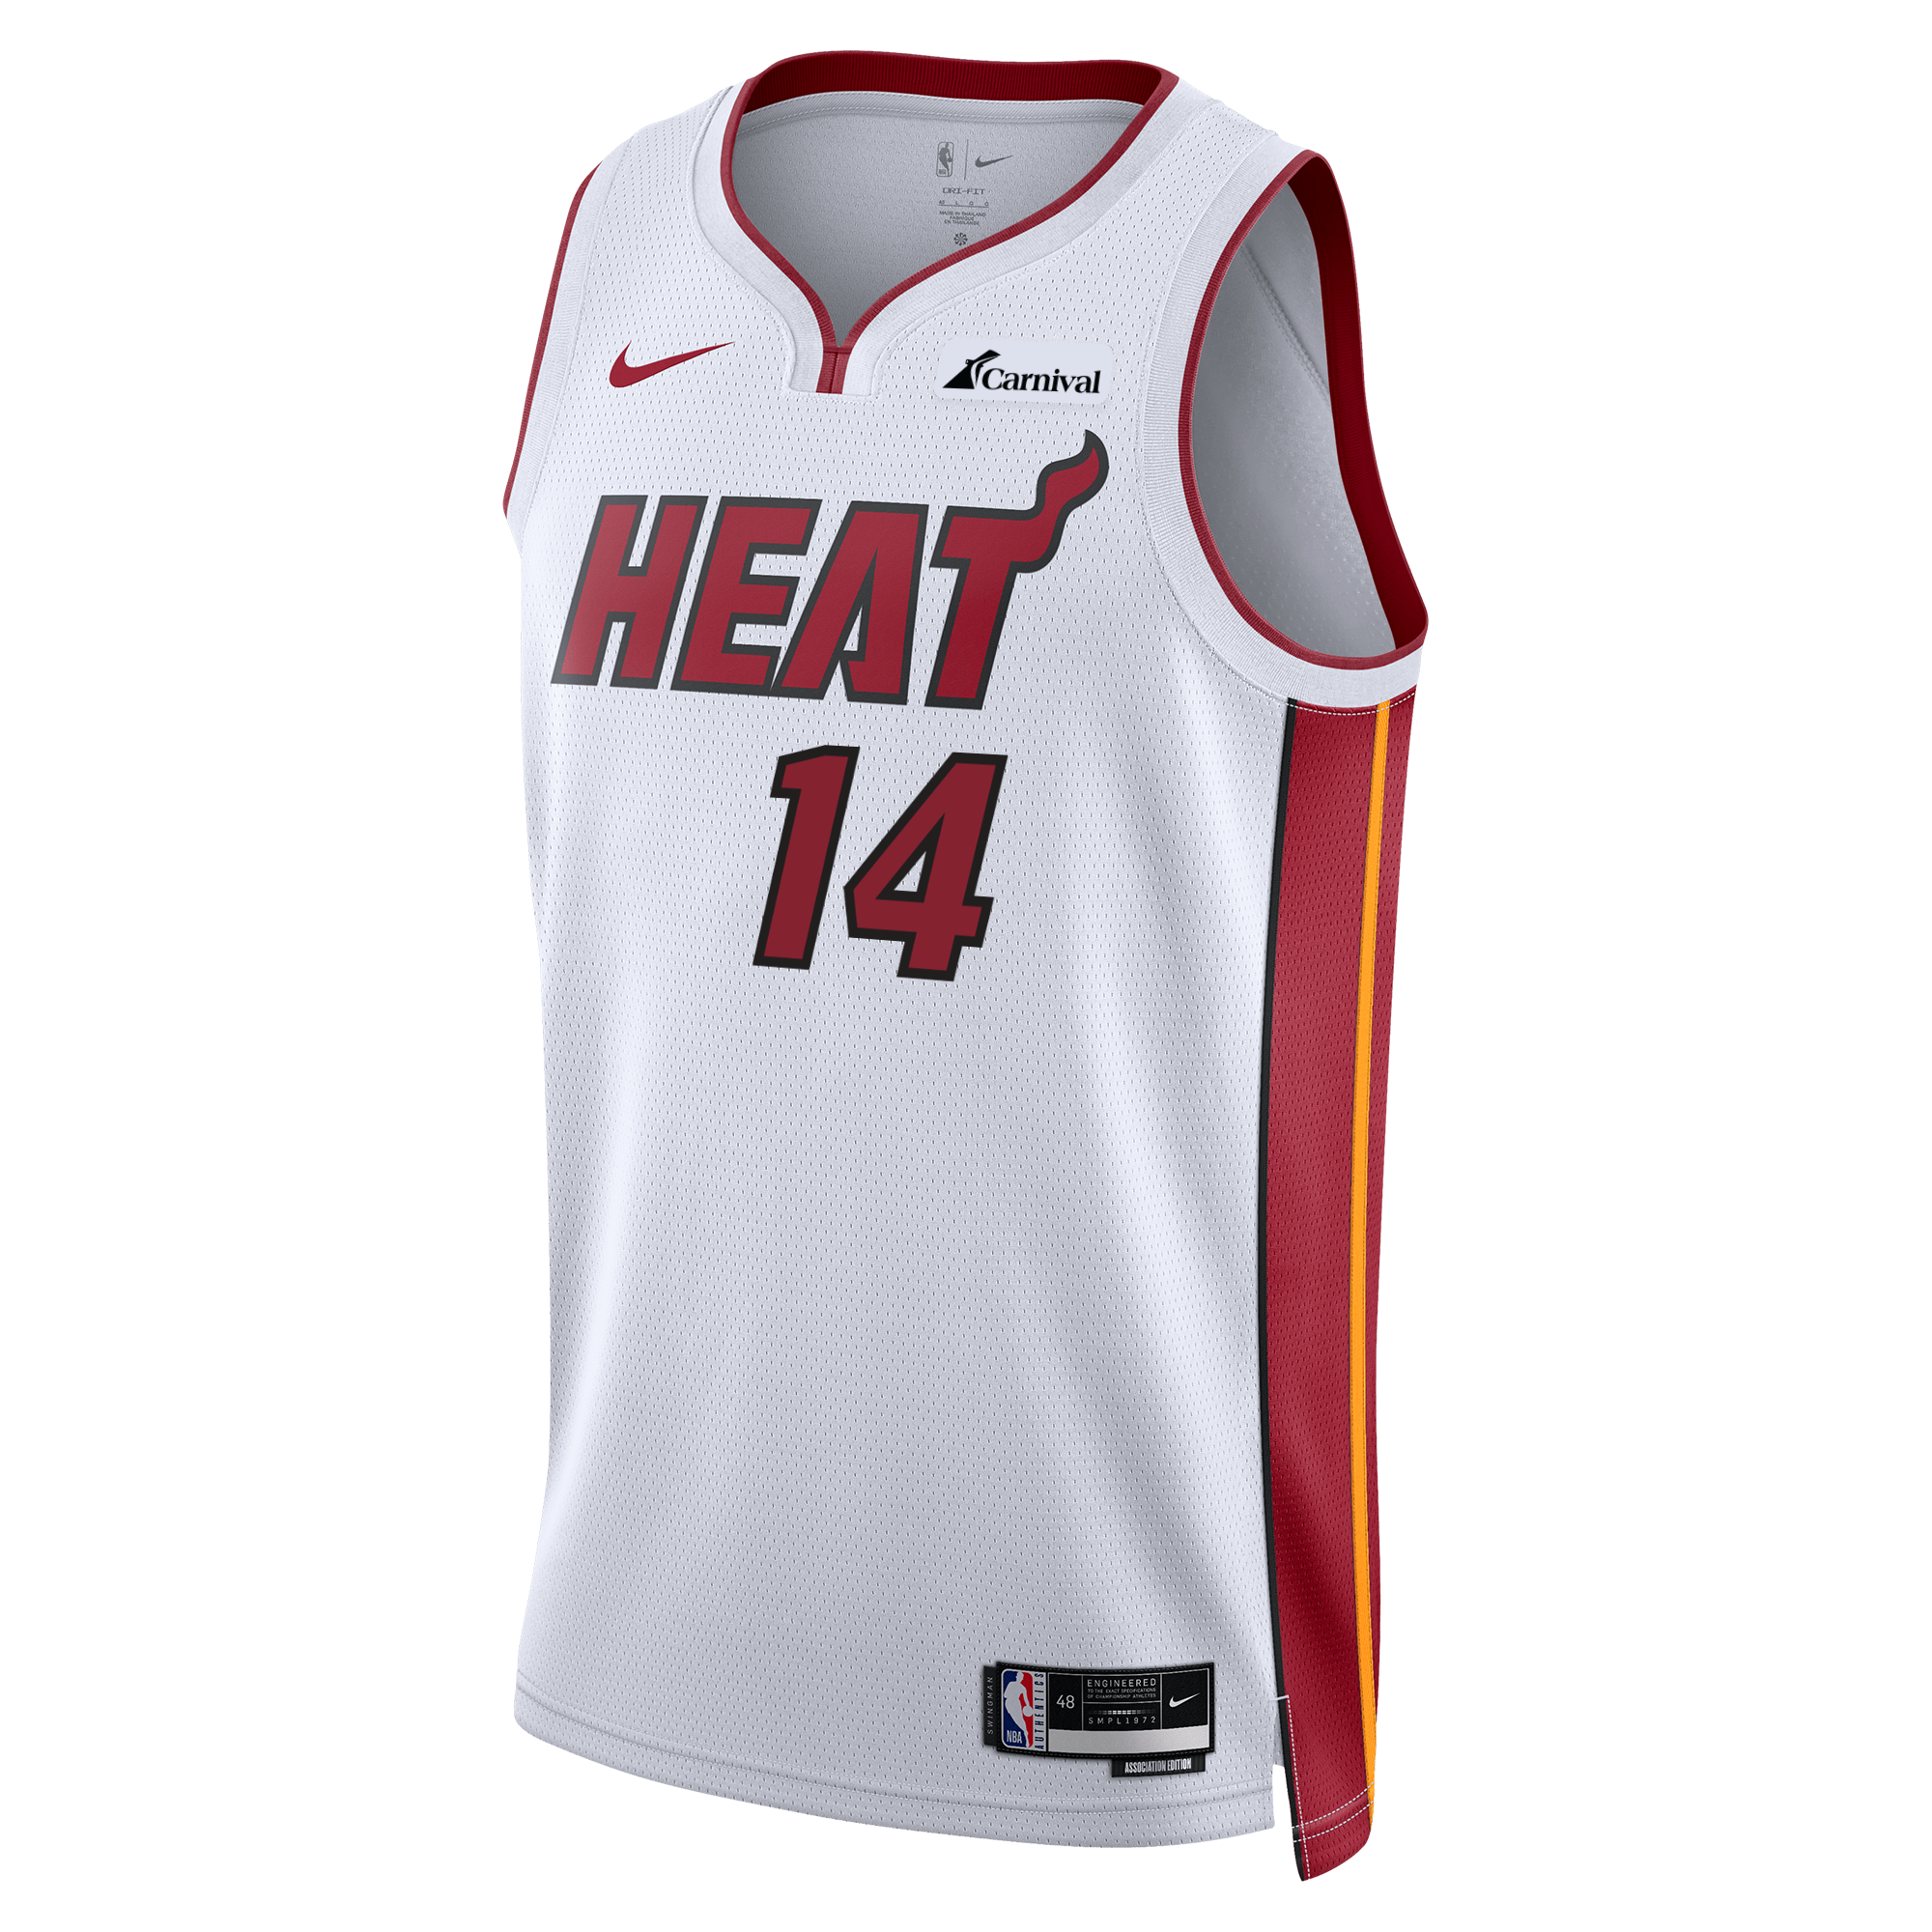 Tyler Herro Jersey - NBA Miami Heat Tyler Herro Jerseys - Heat Store